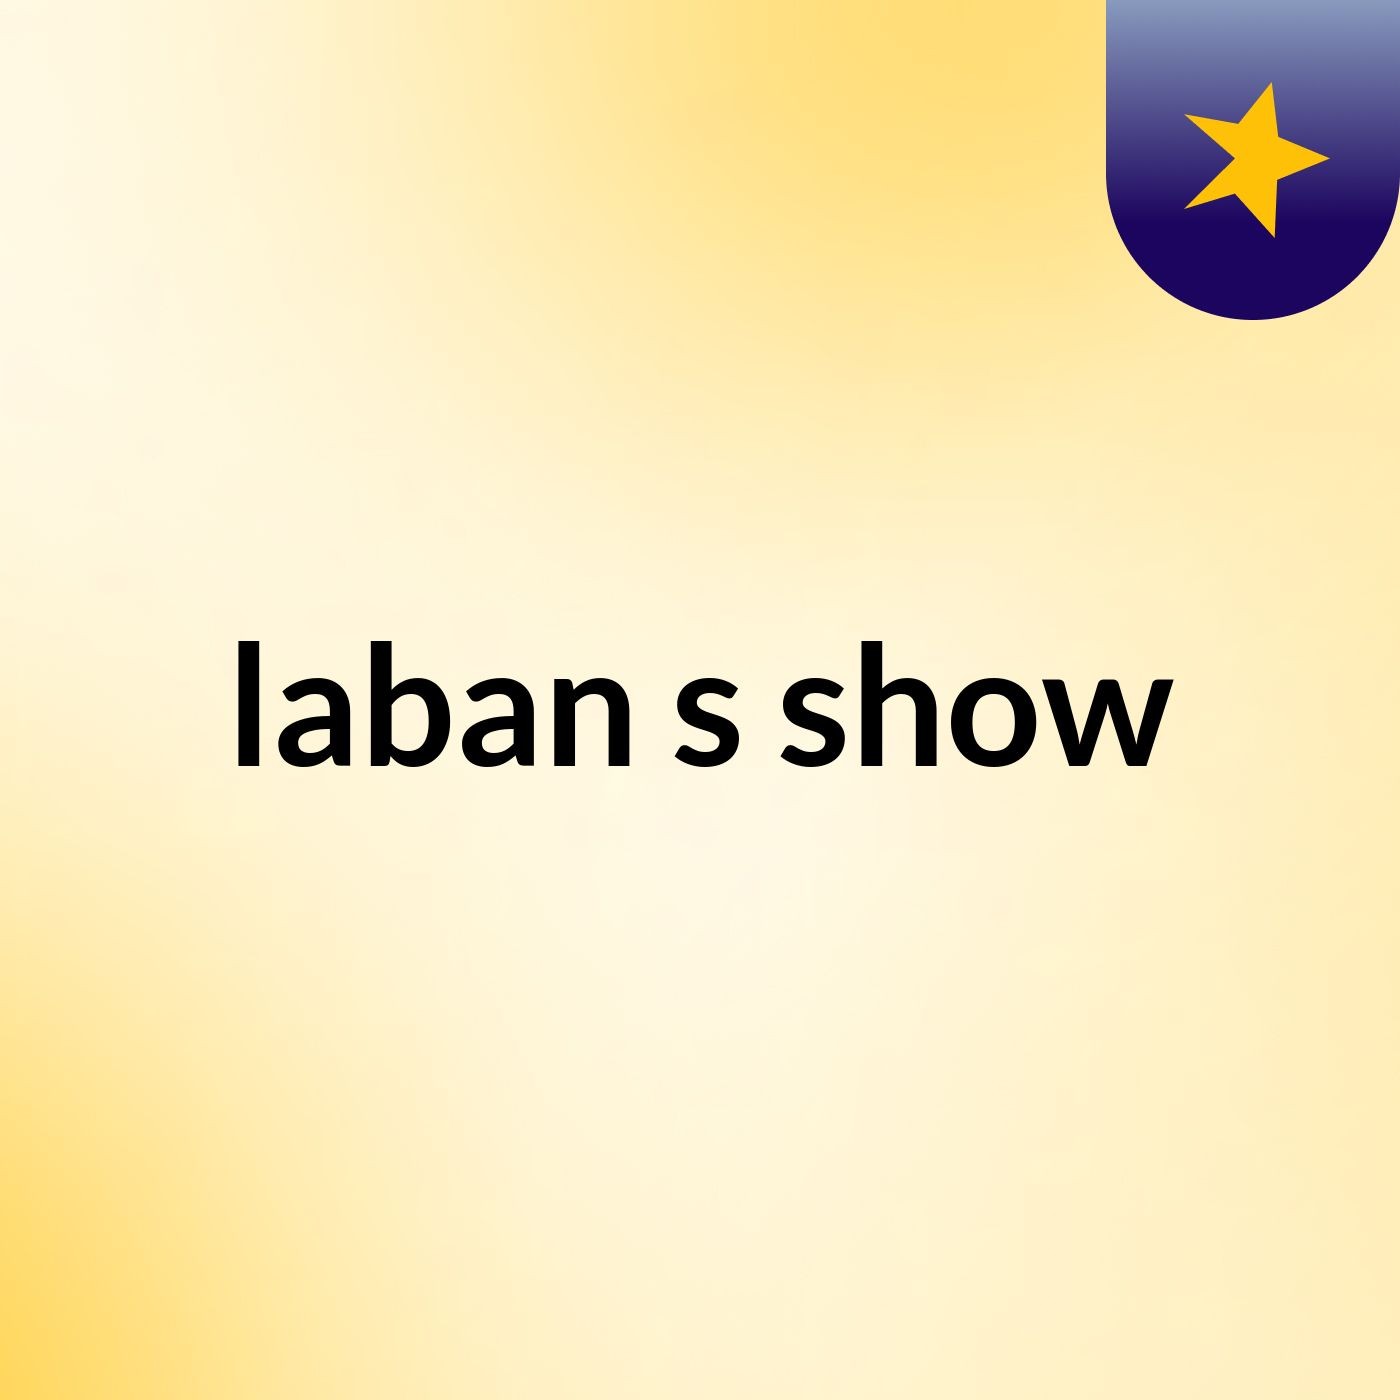 laban's show